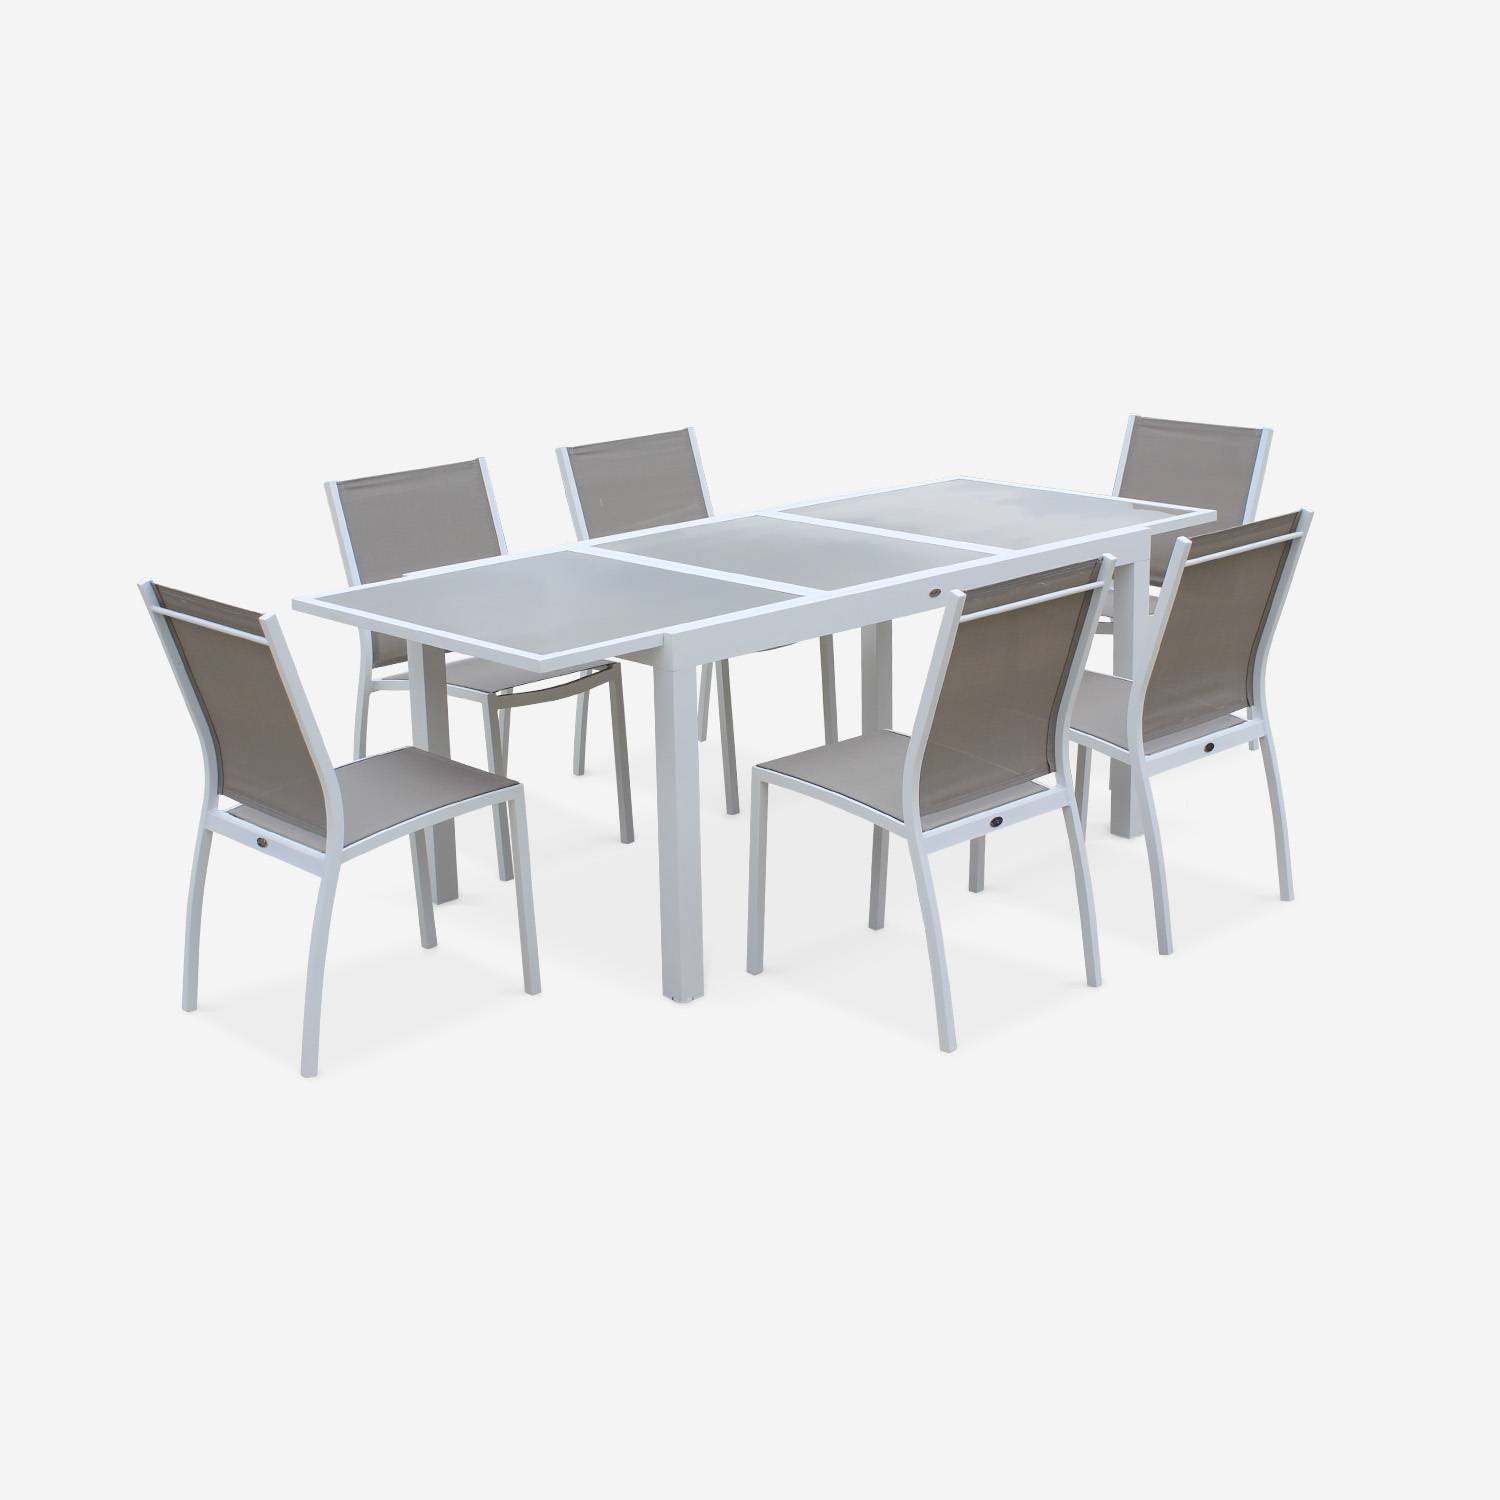 2er Set Gartenstühle - ORLANDO Farbe Weiß / Taupe - Gestell aus Aluminum, Sitz aus Textilene, stapelbar Photo4